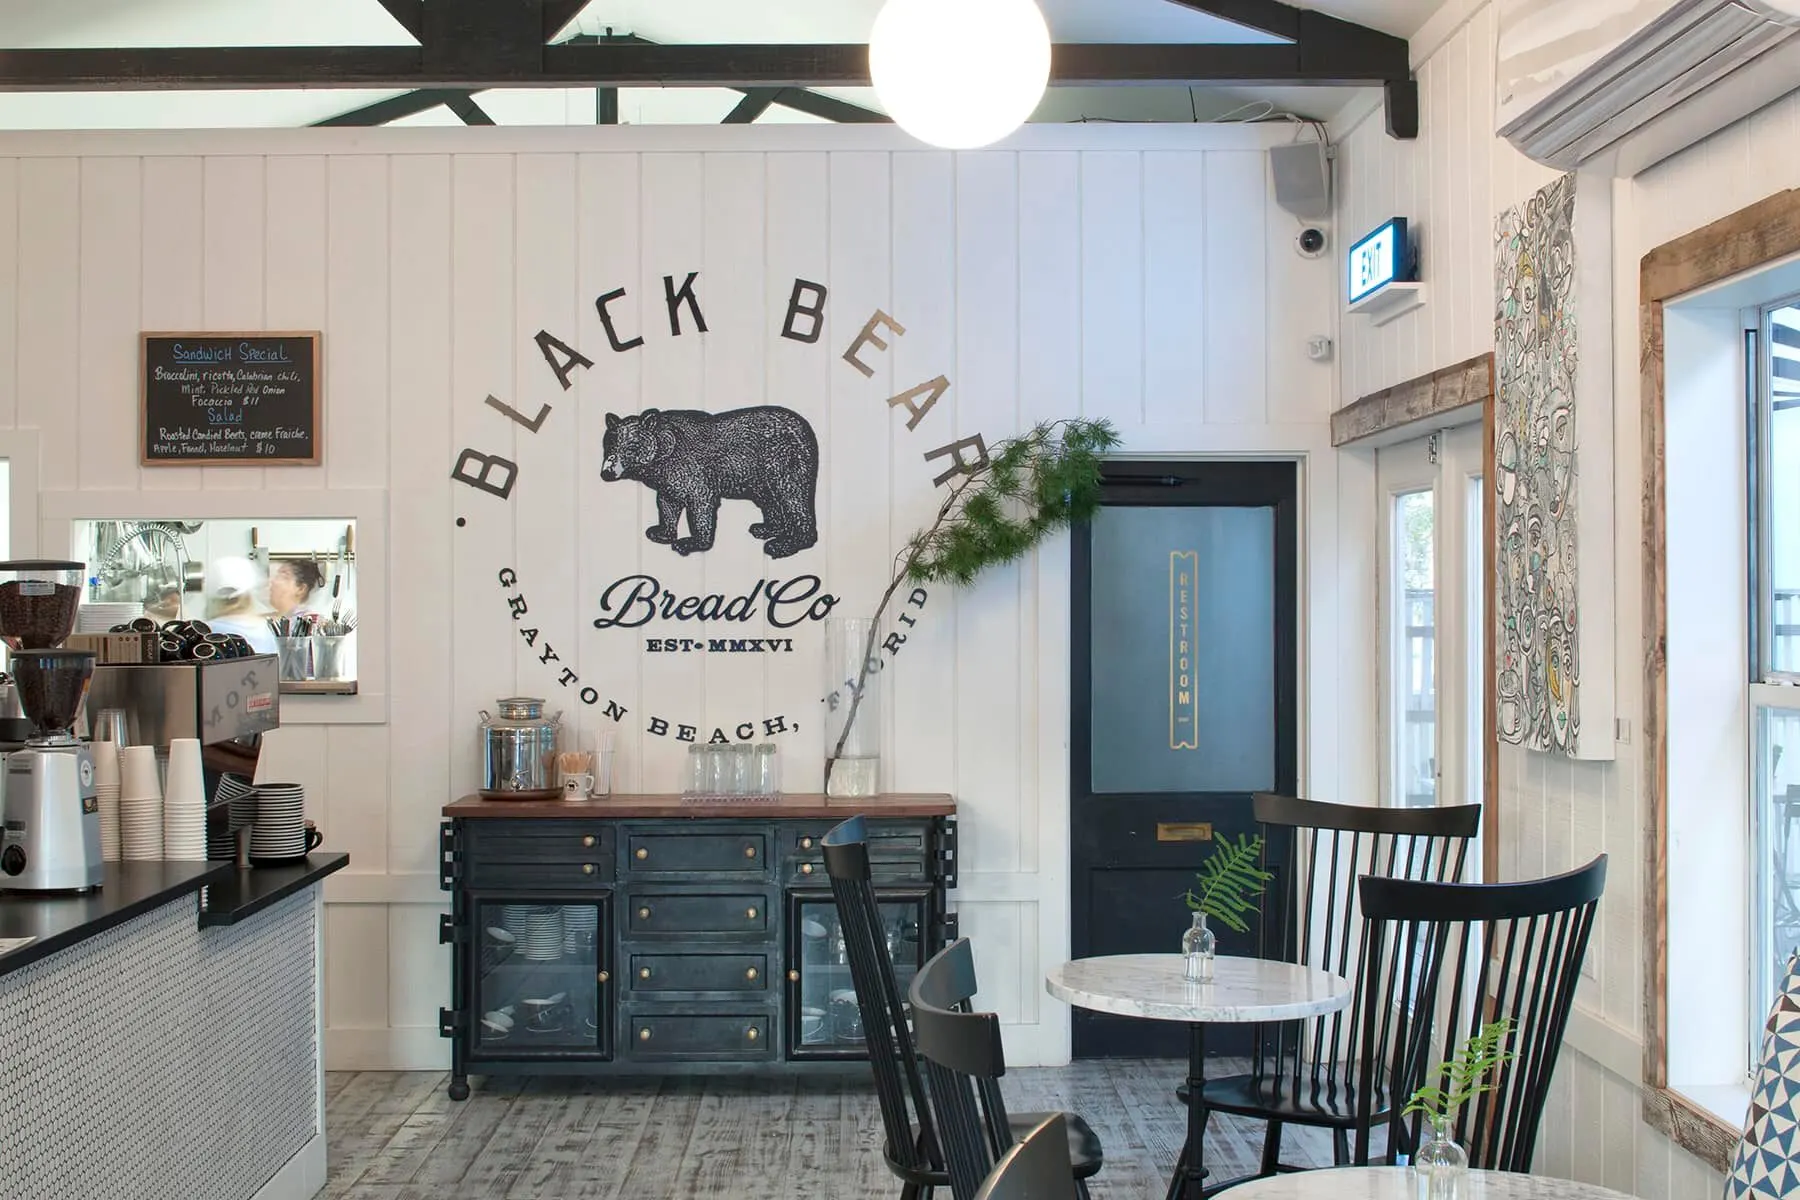 Black Bear Bread Co.